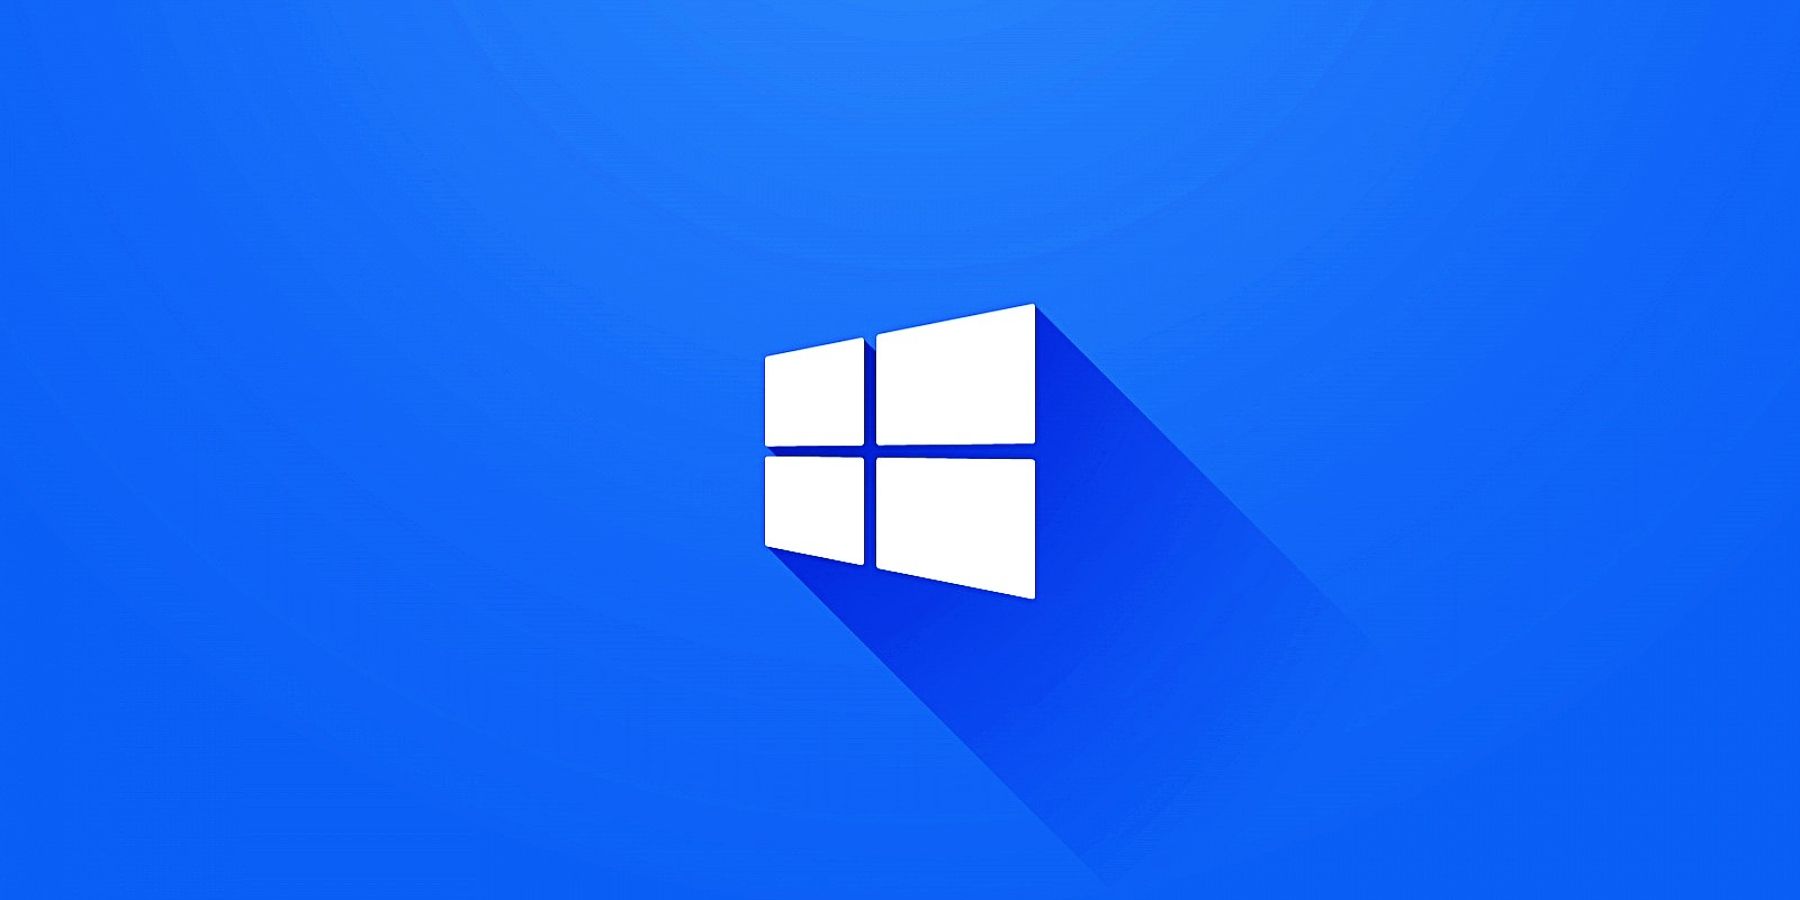 Windows 12 đang chờ đón bạn đến với những tính năng mới và nâng cấp đáng mong đợi. Sản phẩm mới nhất của Microsoft sẽ vượt trội hơn, tiết kiệm tài nguyên hơn và tăng hiệu suất làm việc đáng kinh ngạc.